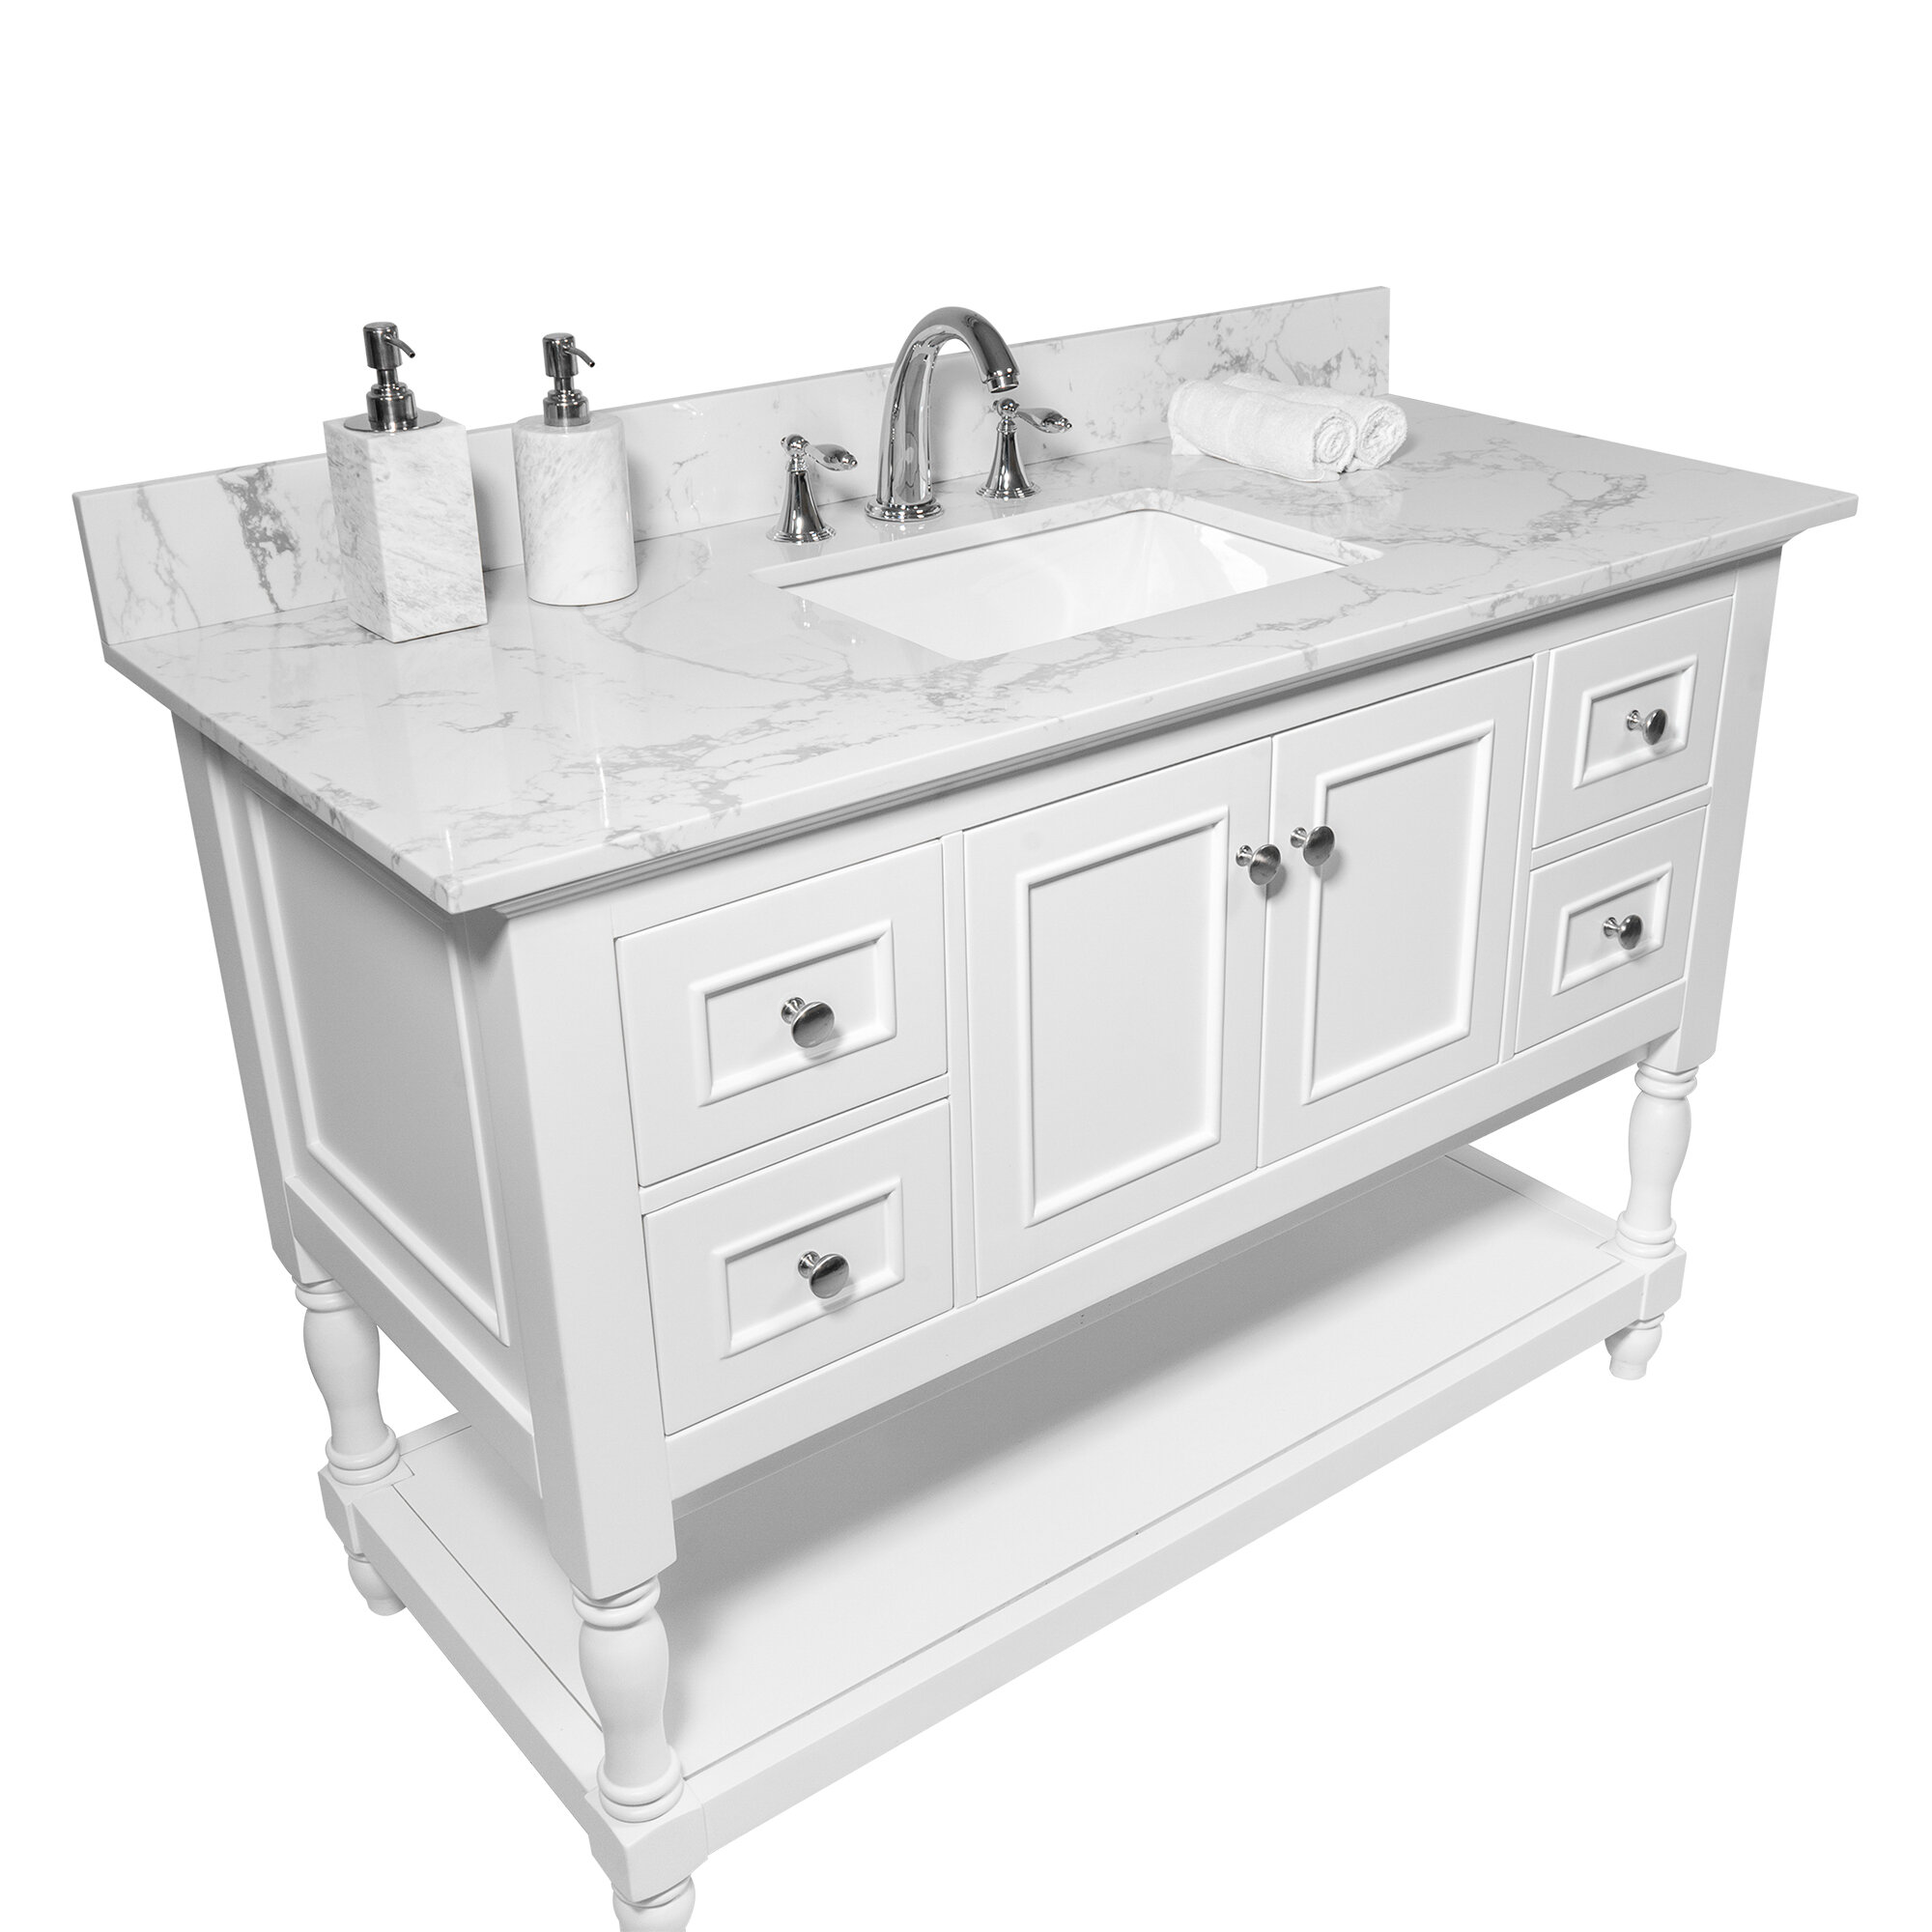 Watqen 37 Single Bathroom Vanity Top In White With Sink Reviews Wayfair